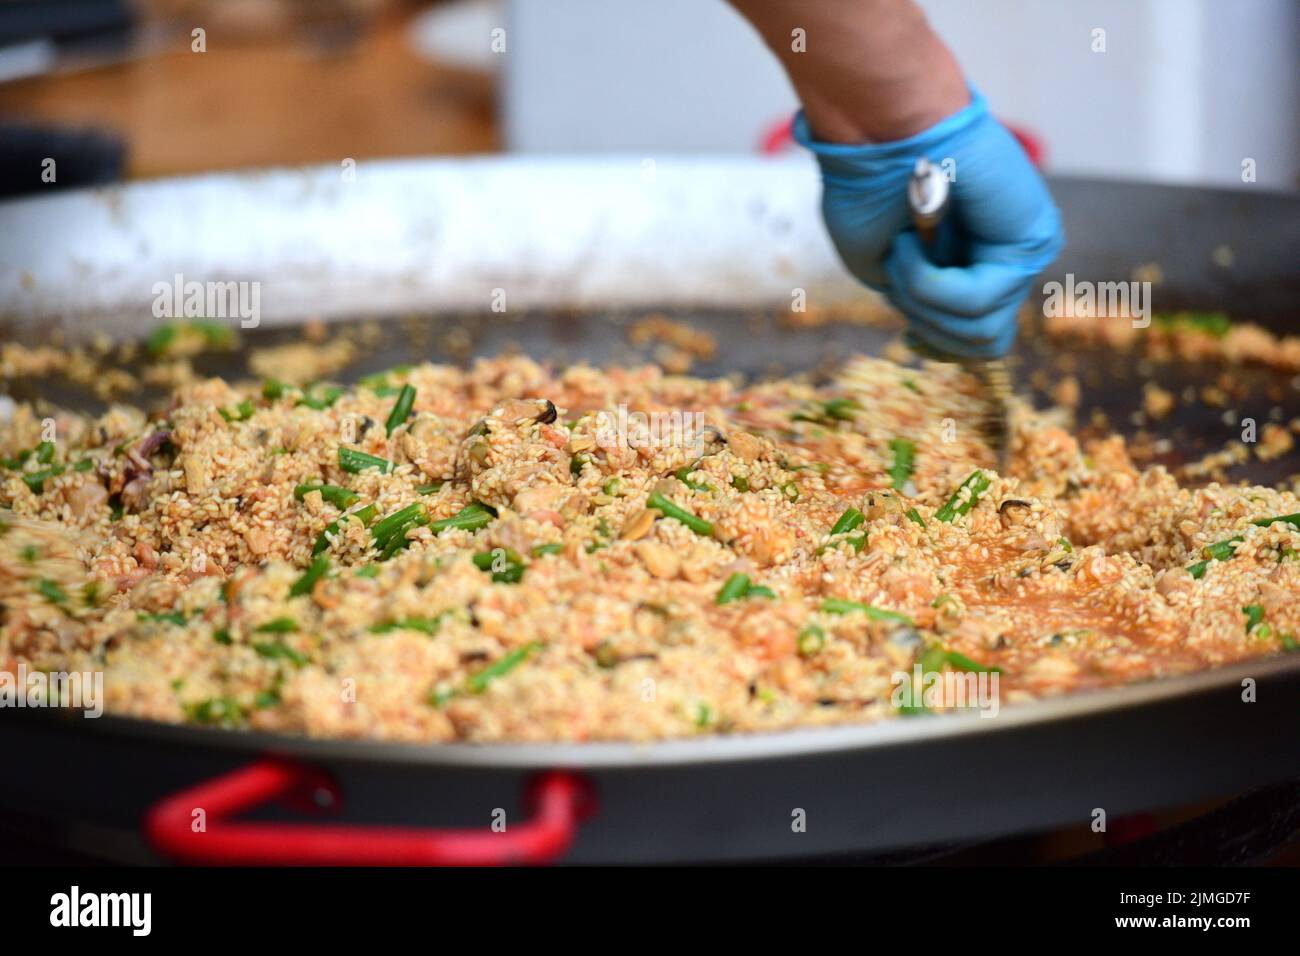 Zubereitung einer Paella in einer großen Pfanne - Preparing a paella in a large pan Stock Photo